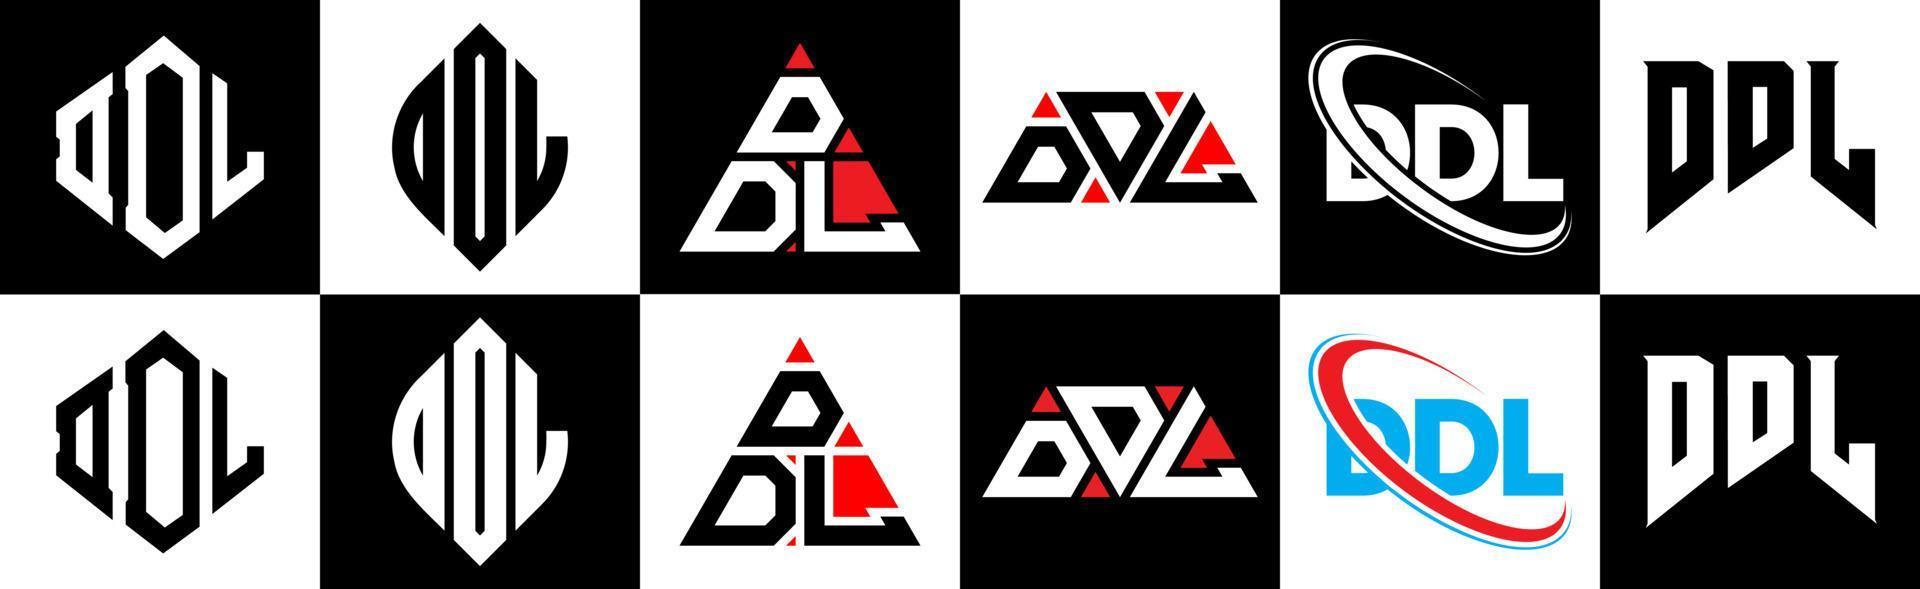 Ddl-Buchstaben-Logo-Design in sechs Stilen. ddl polygon, kreis, dreieck, hexagon, flacher und einfacher stil mit schwarz-weißem buchstabenlogo in einer zeichenfläche. ddl minimalistisches und klassisches Logo vektor